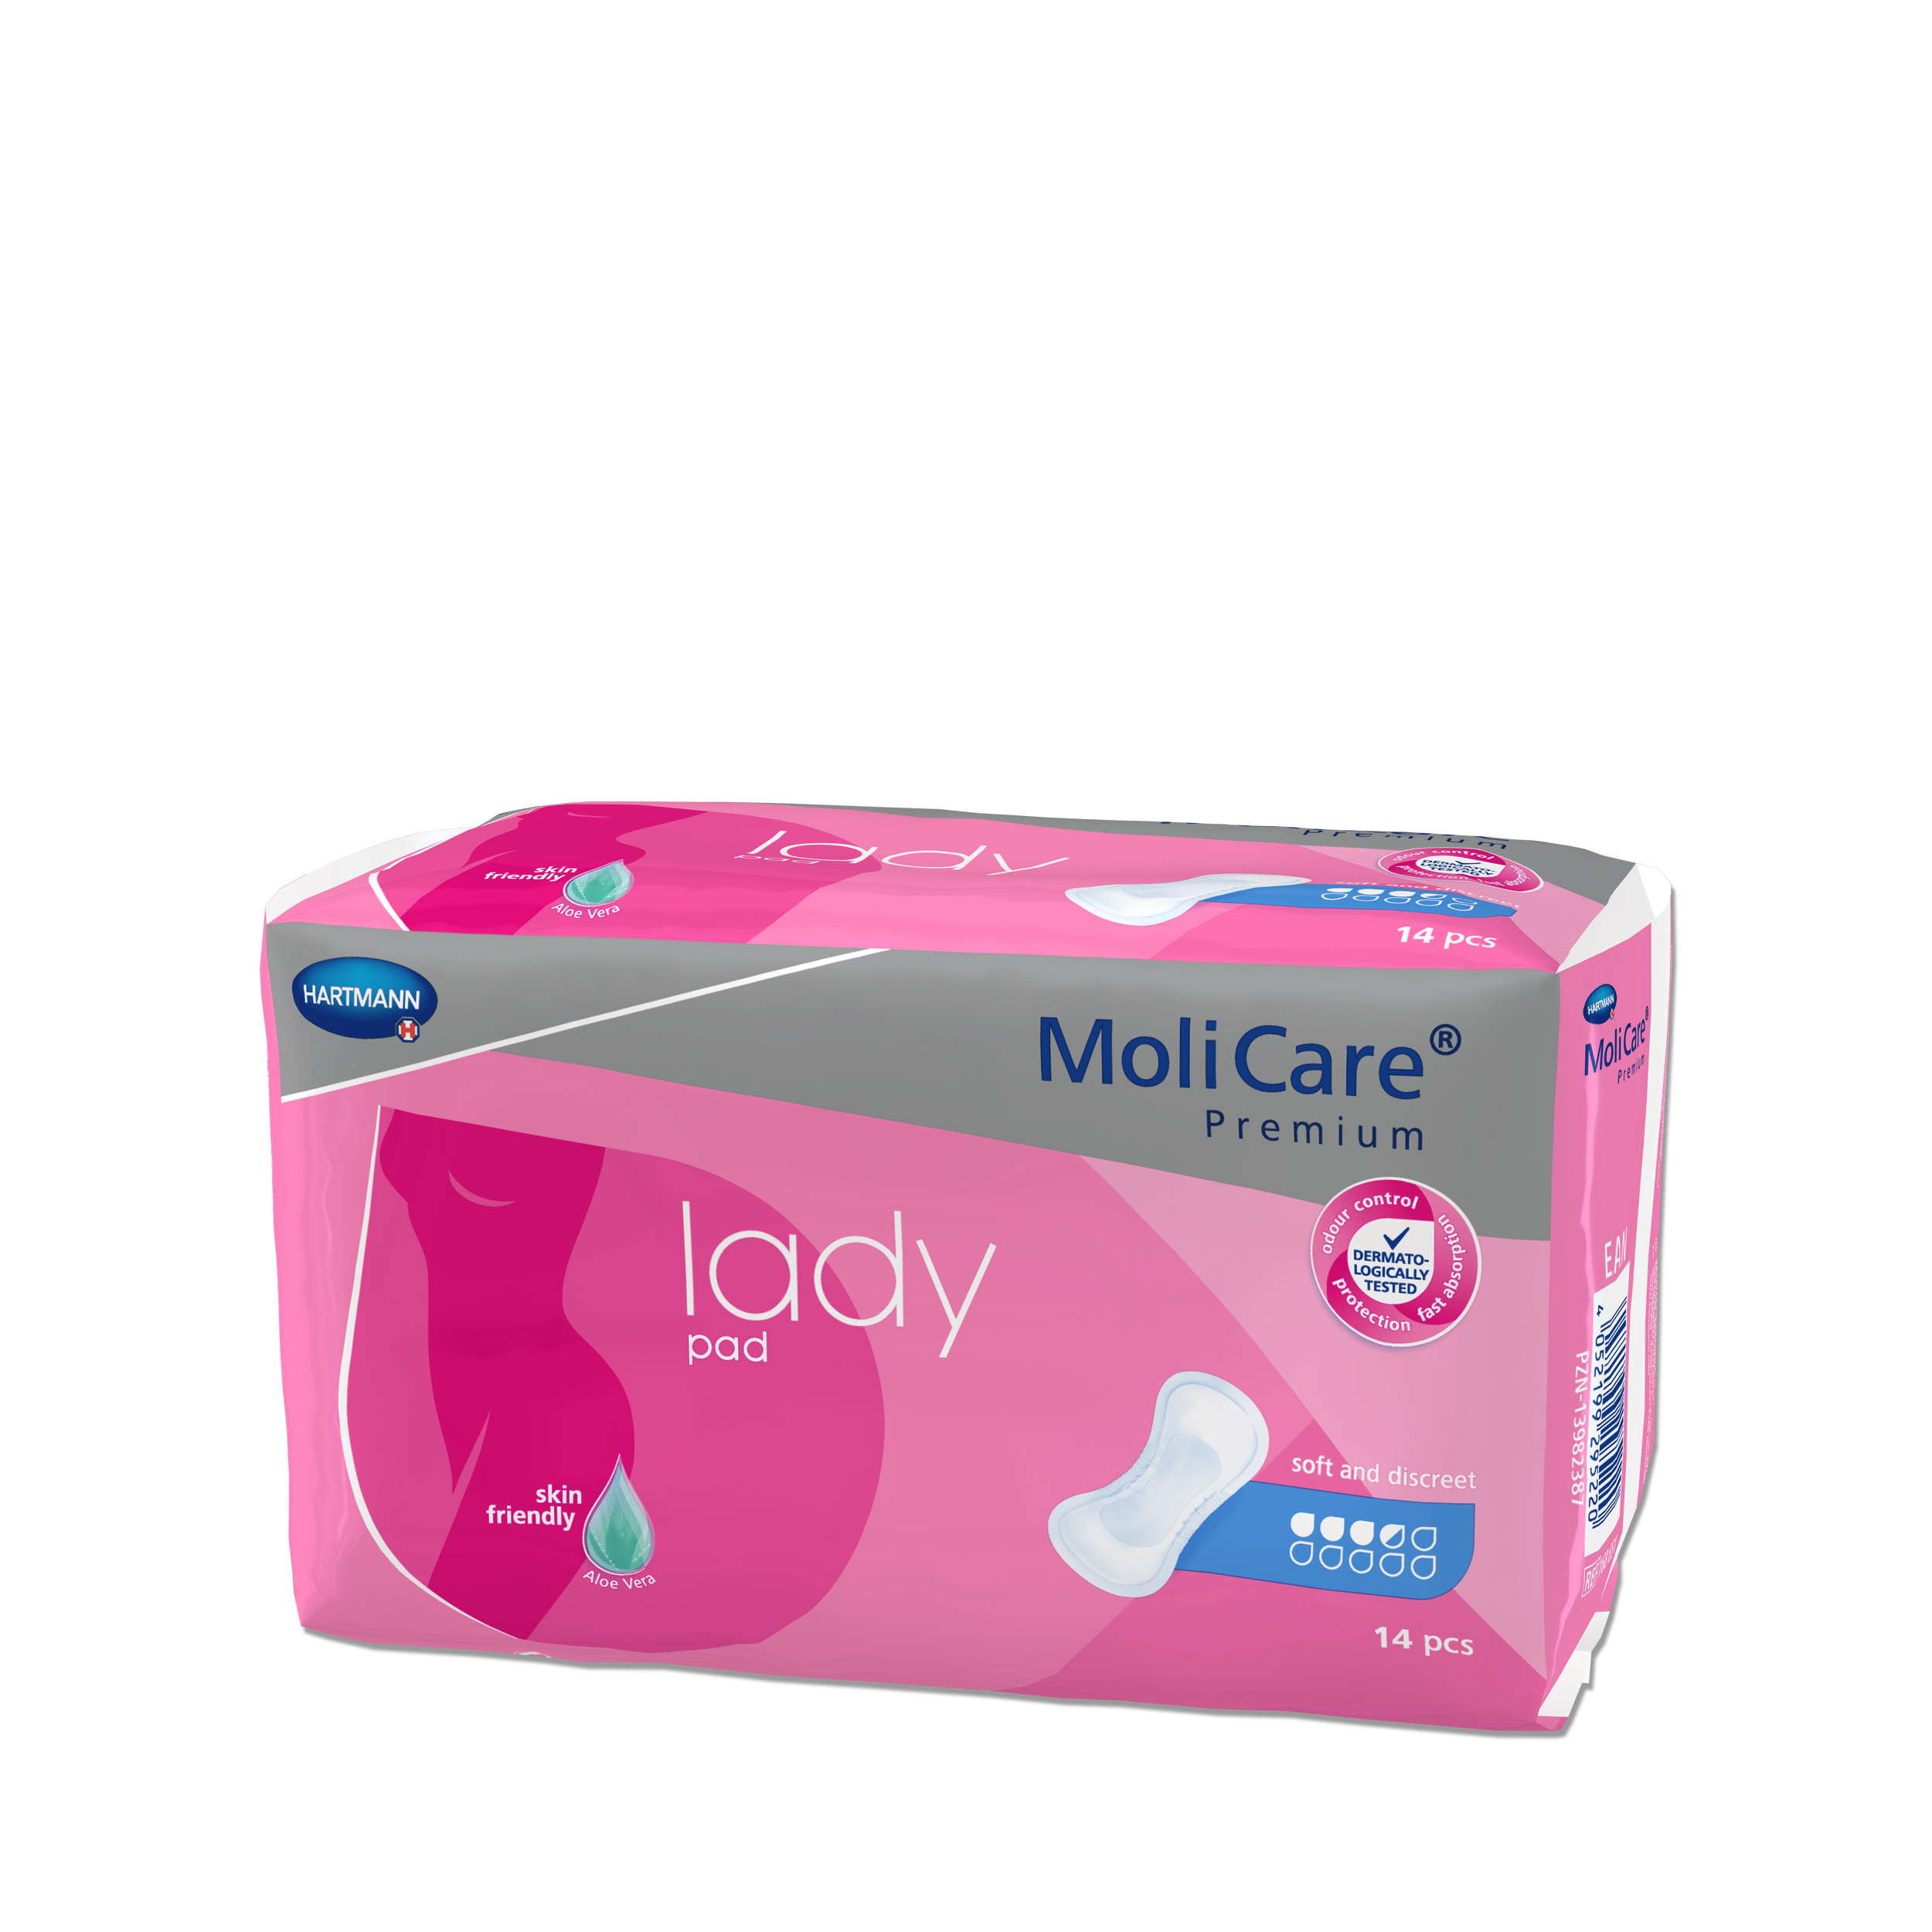 MoliCare Lady Pads Inkontinenz Einlagen für Frauen mittlere Stärke